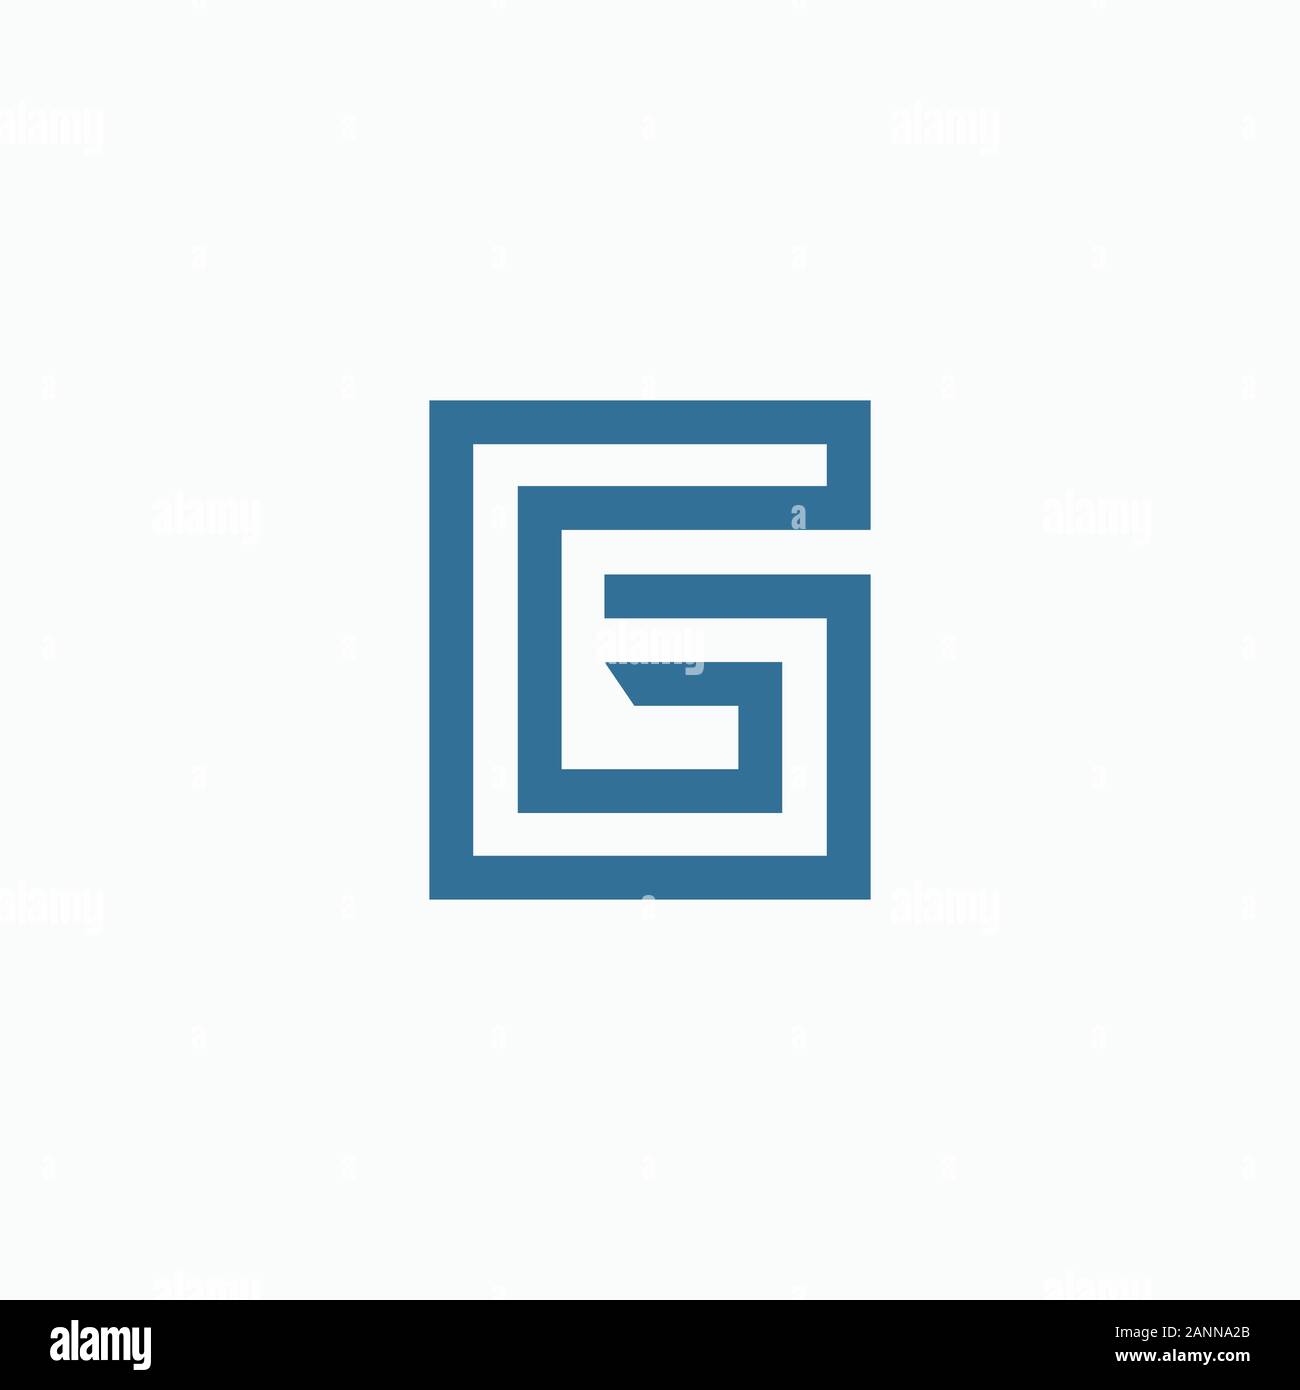 initial letter gb or bg logo vector design Stock Vector